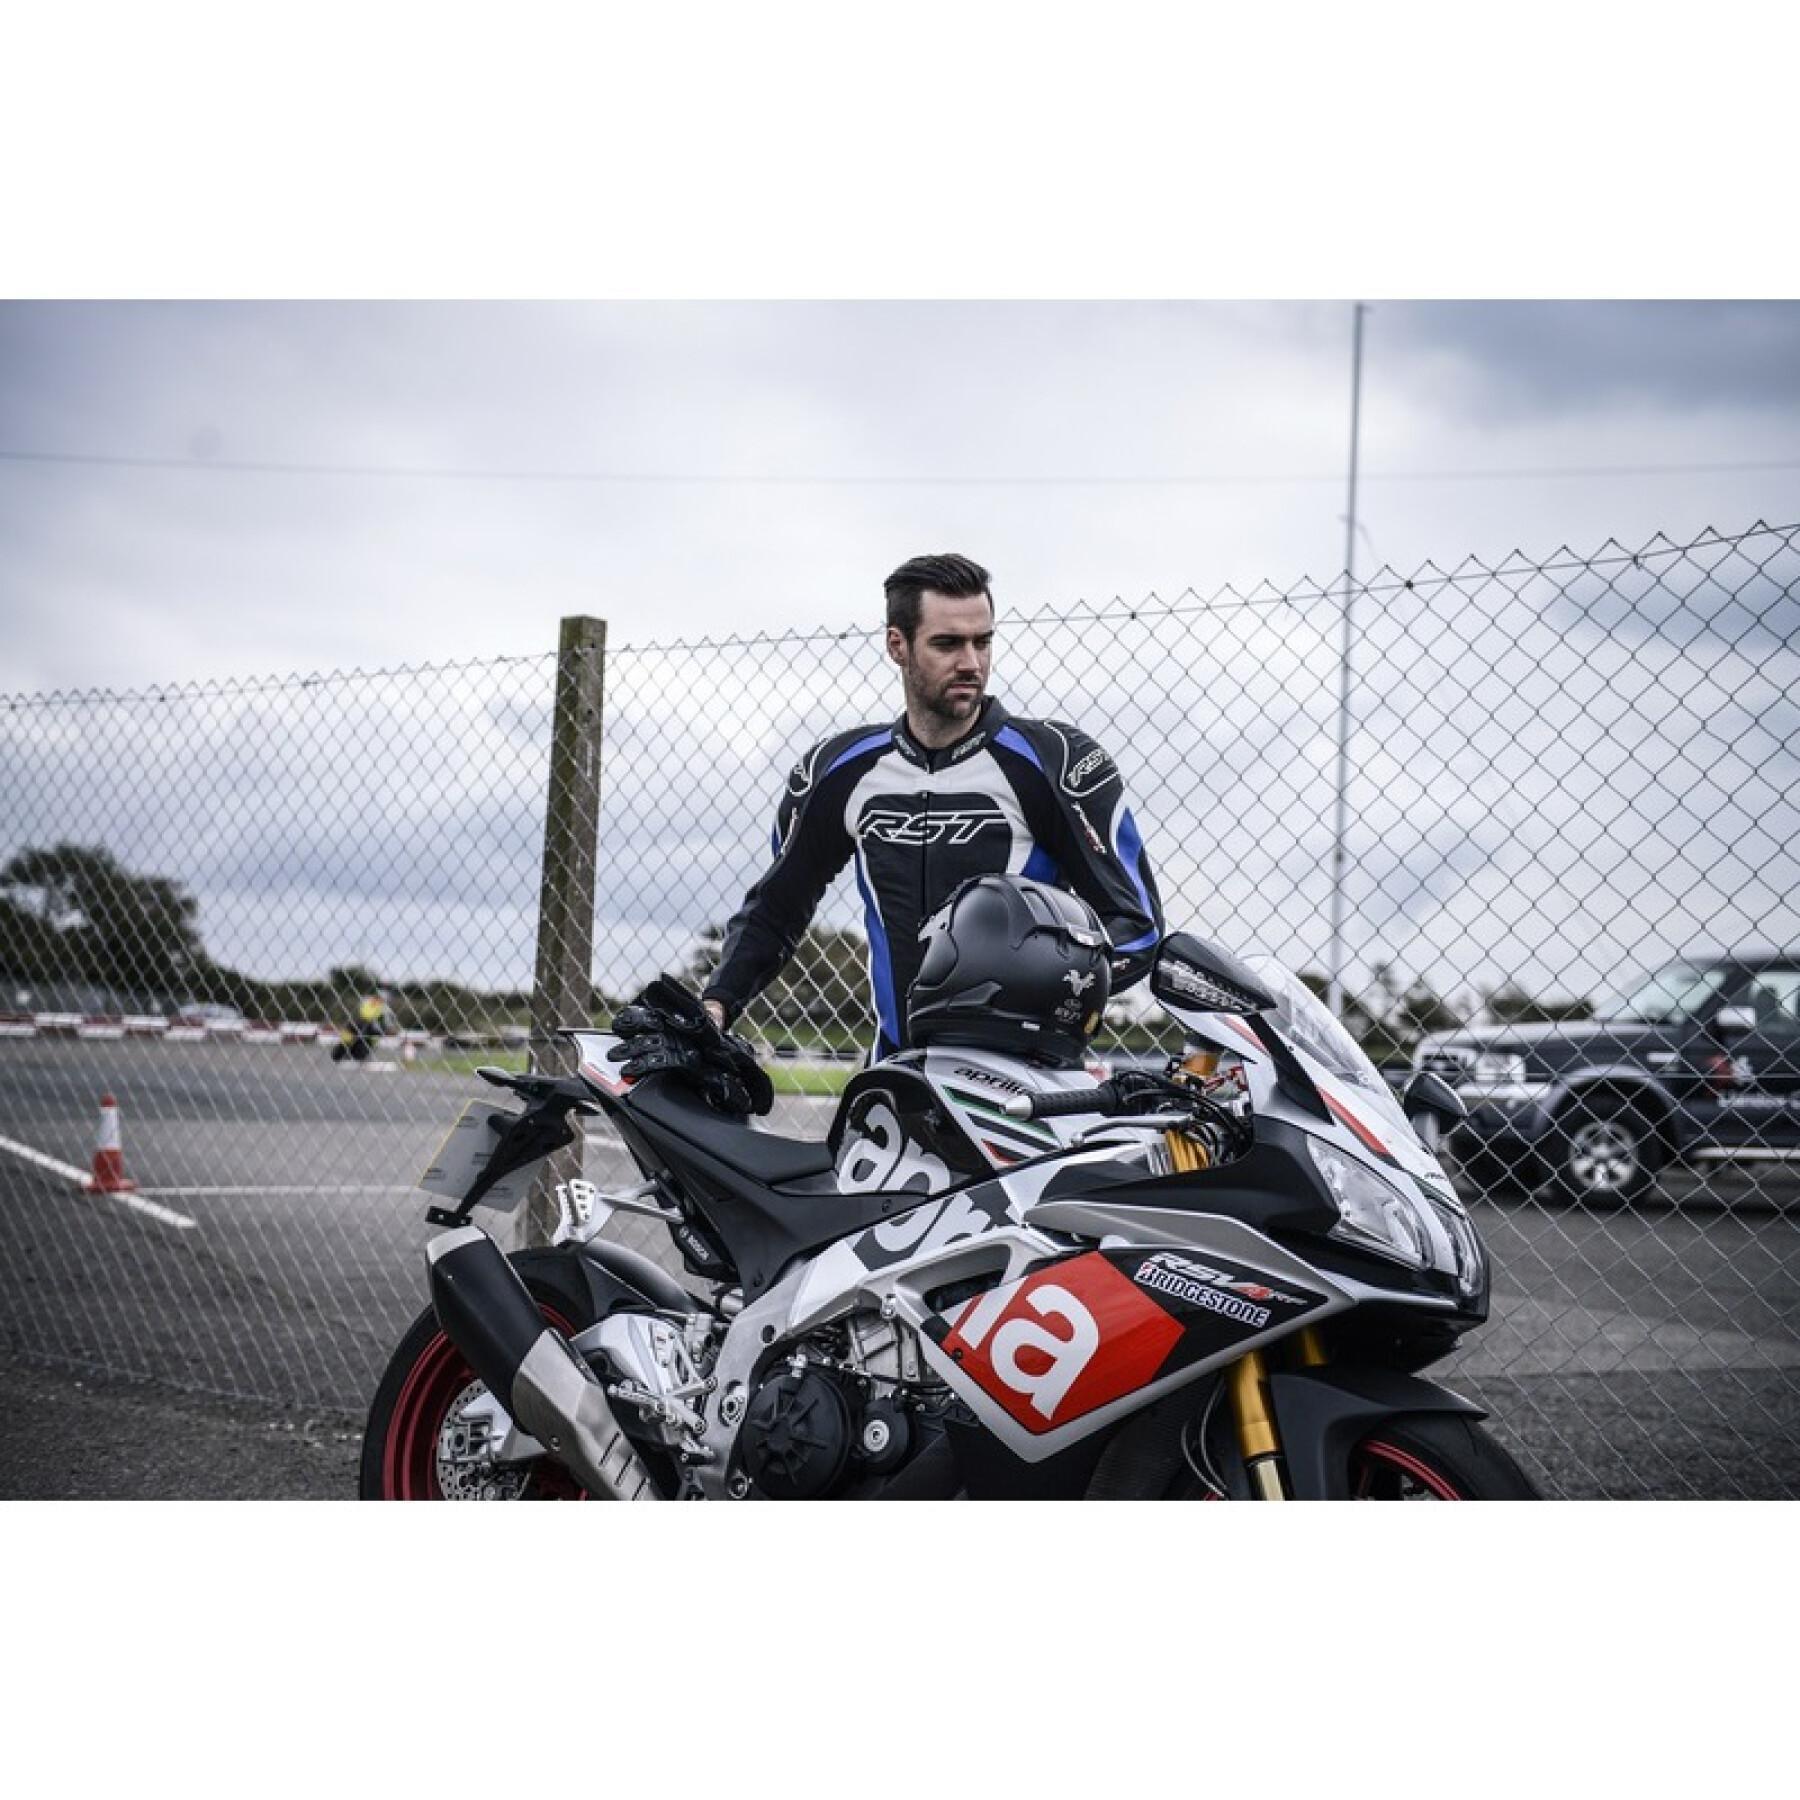 Motocross-handskar RST Tractech Evo CE